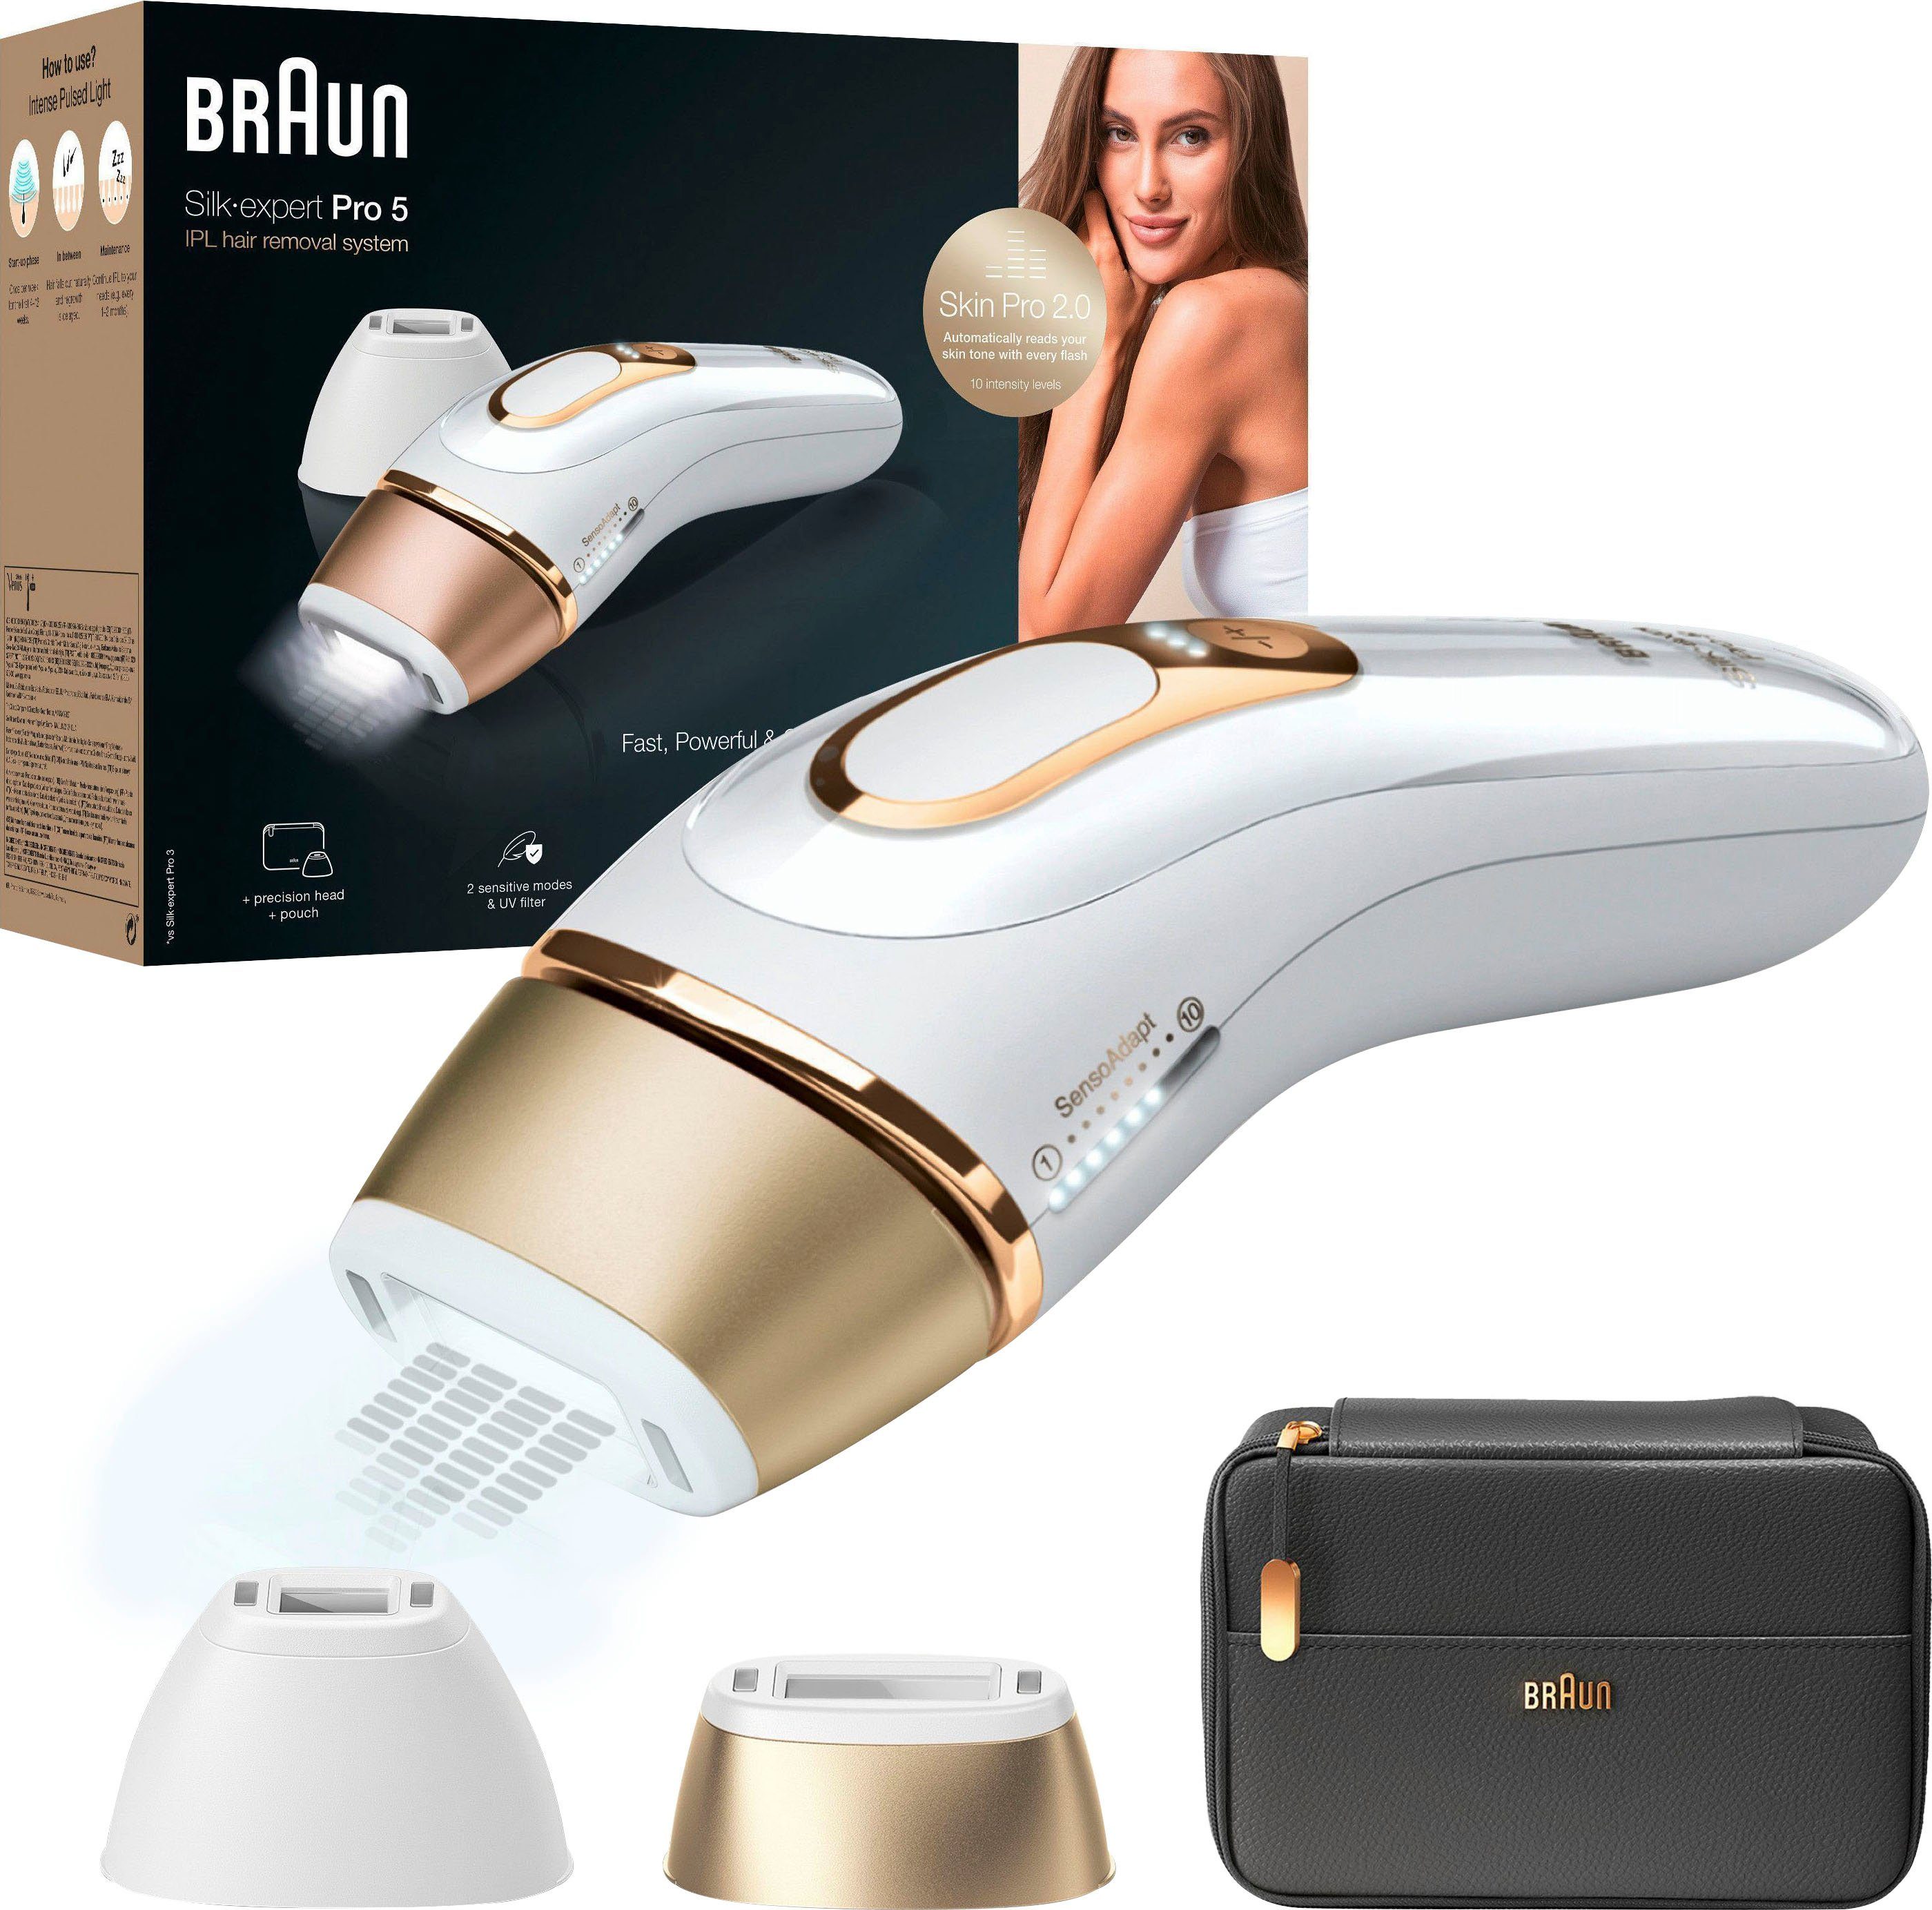 Braun IPL-Haarentferner Silk-expert Pro IPL PL5140, 400.000 Lichtimpulse, Skin Pro 2.0 Sensor | IPL-Haarentfernung